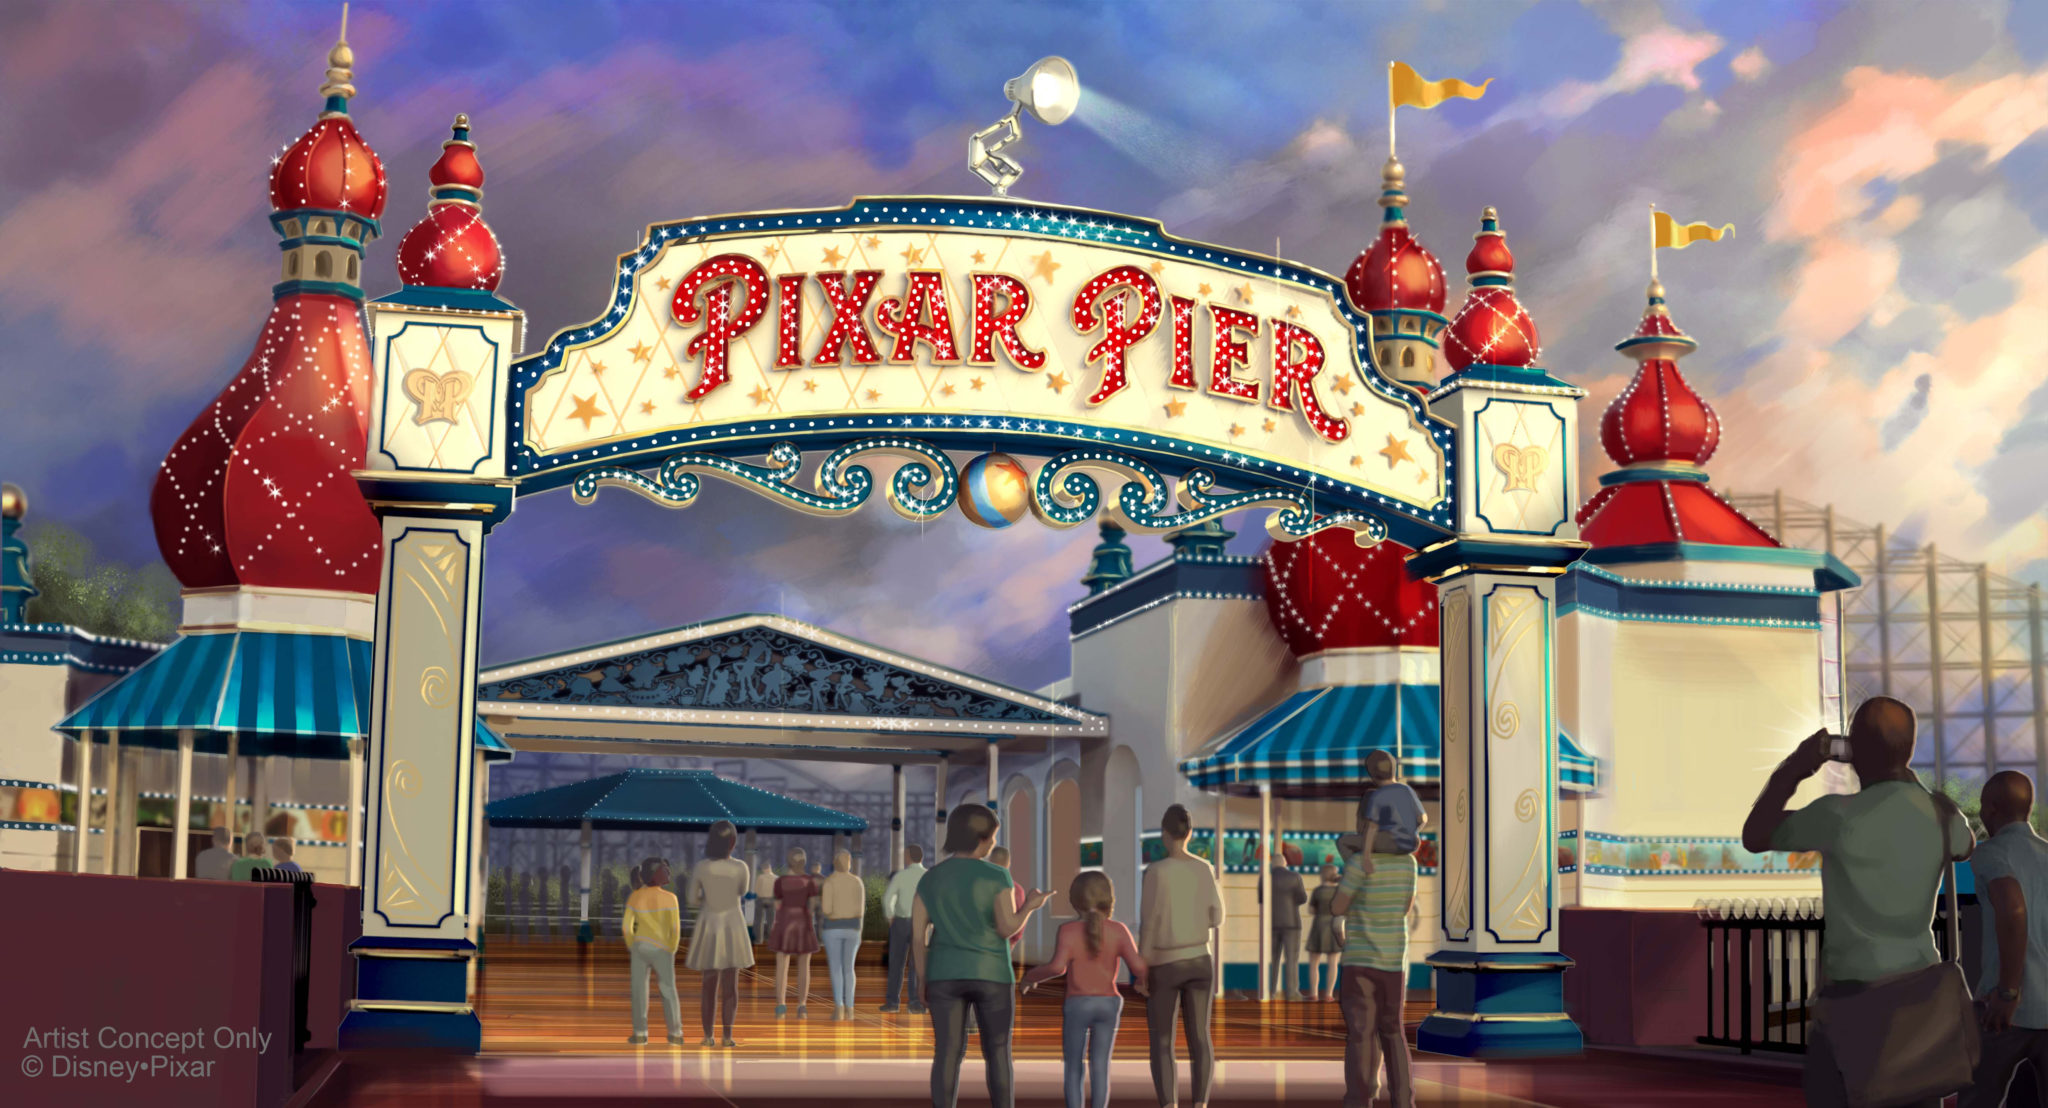 Pixar Pier Opening Date